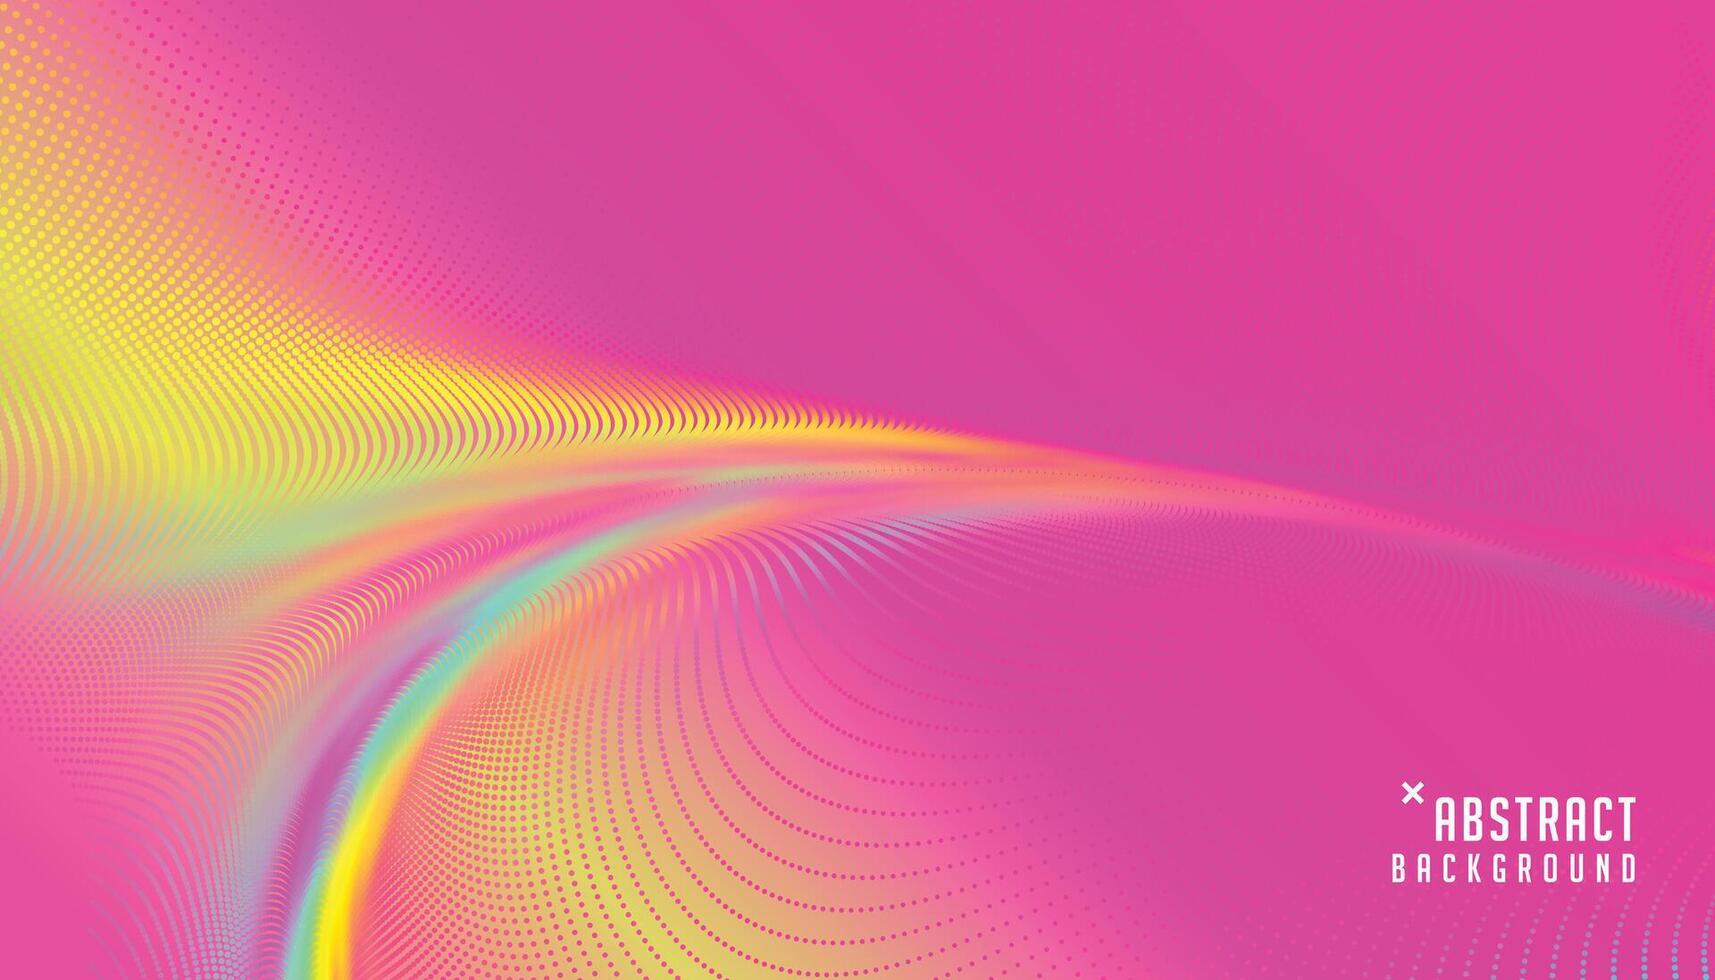 suddig ljus rosa färger partikel bakgrund i abstrakt design vektor